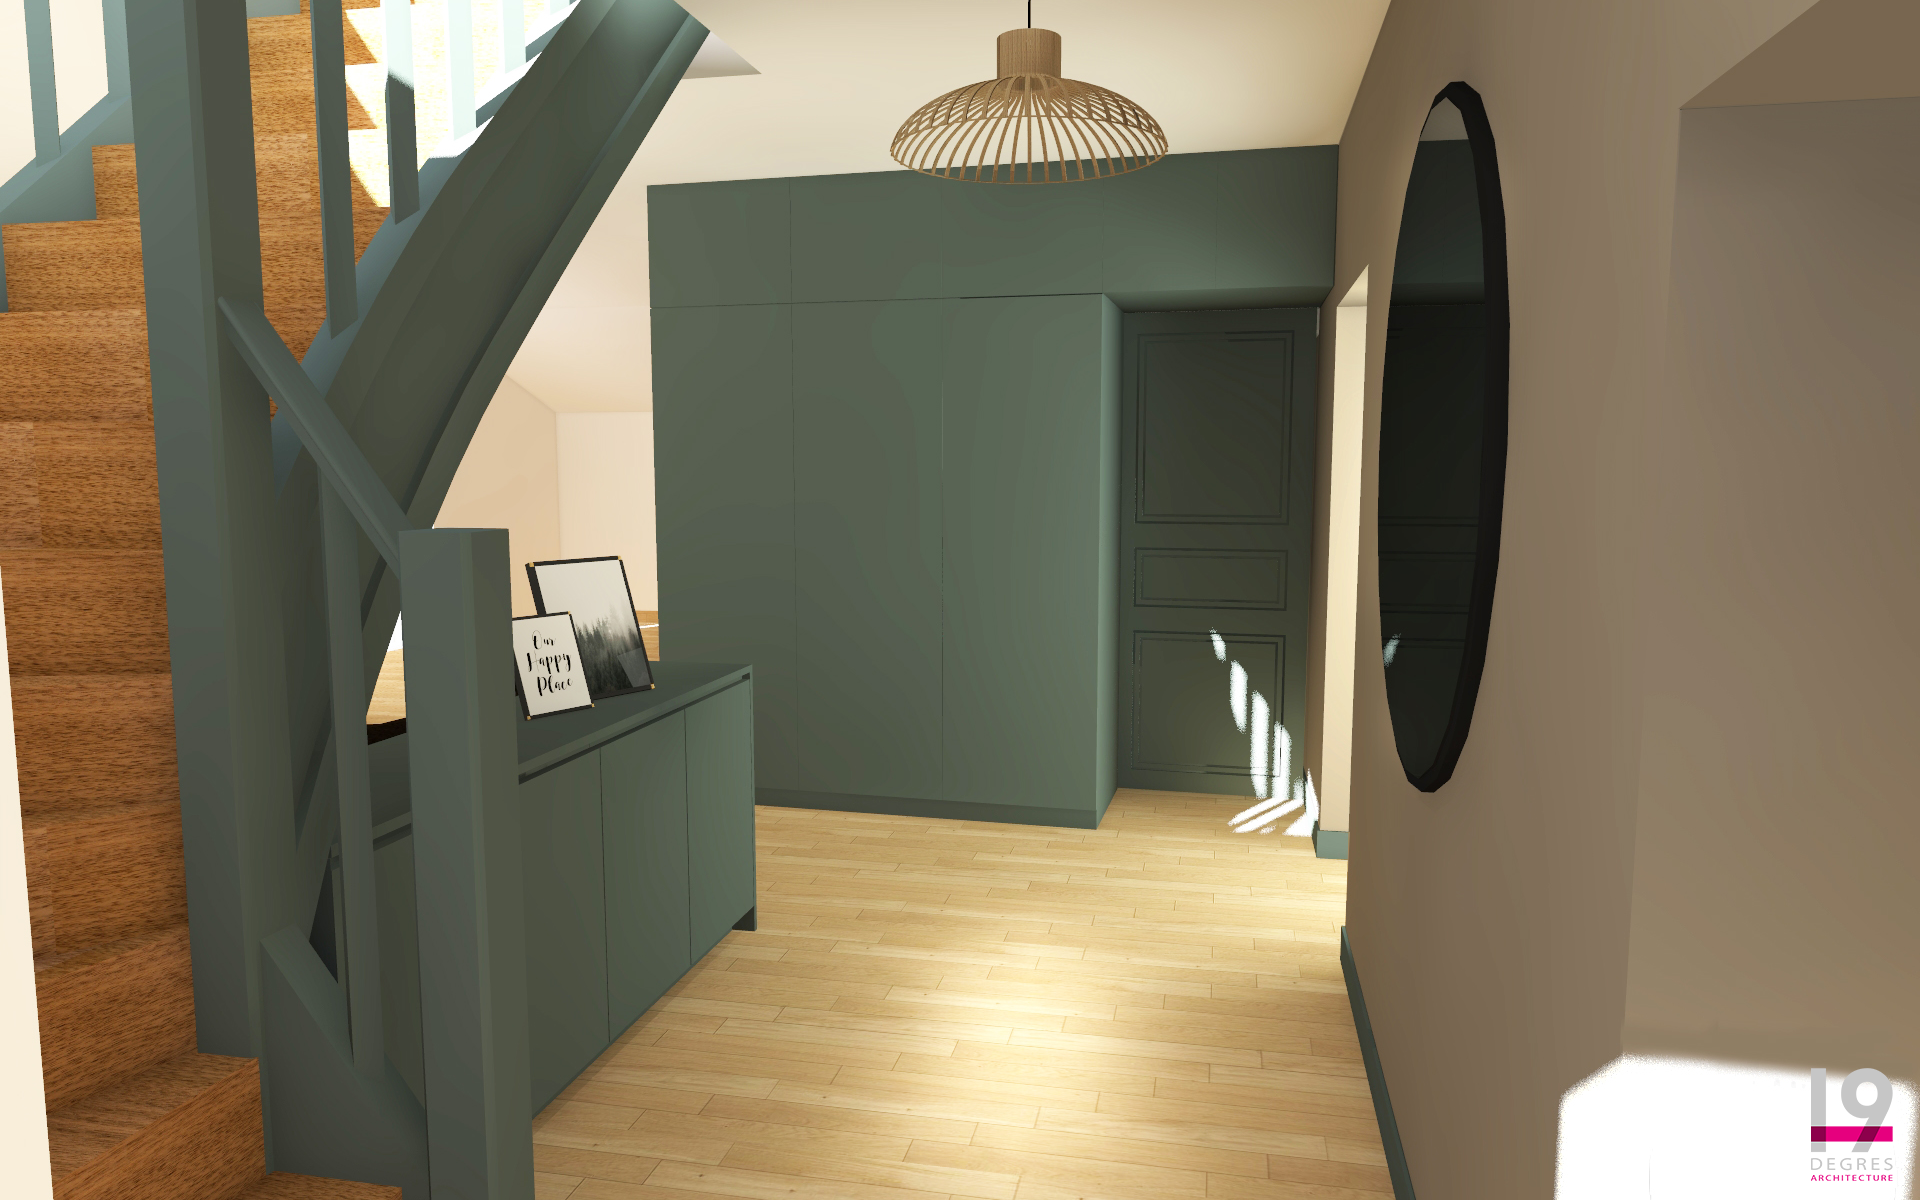 3D de l'entrée de la maison avec vue sur un escalier et des agencements sur-mesure.